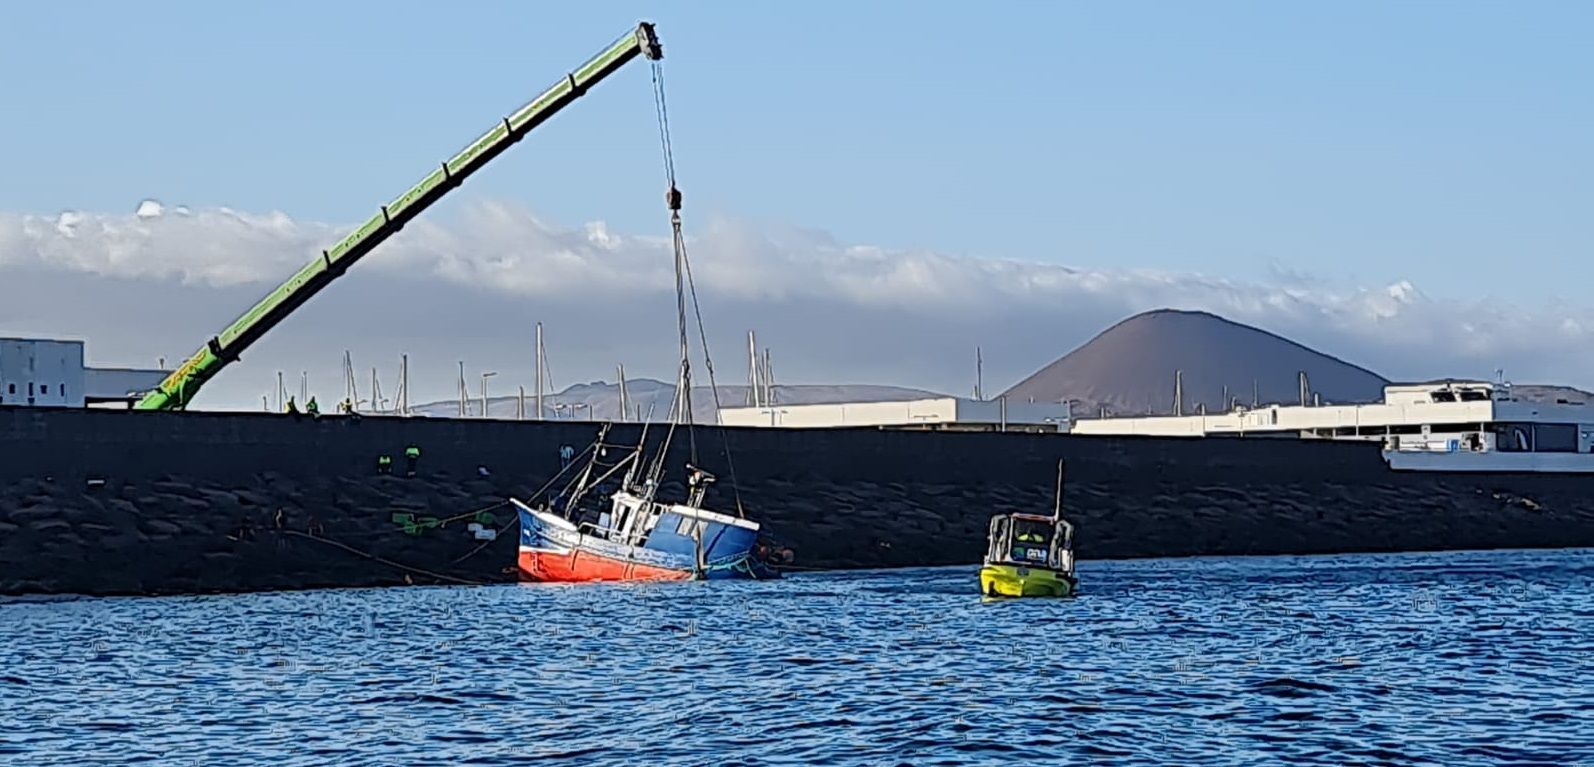 Rescate del barco accidentado en la trasera del puerto Marina Lanzarote (FOTOS: Daniel Camacho)